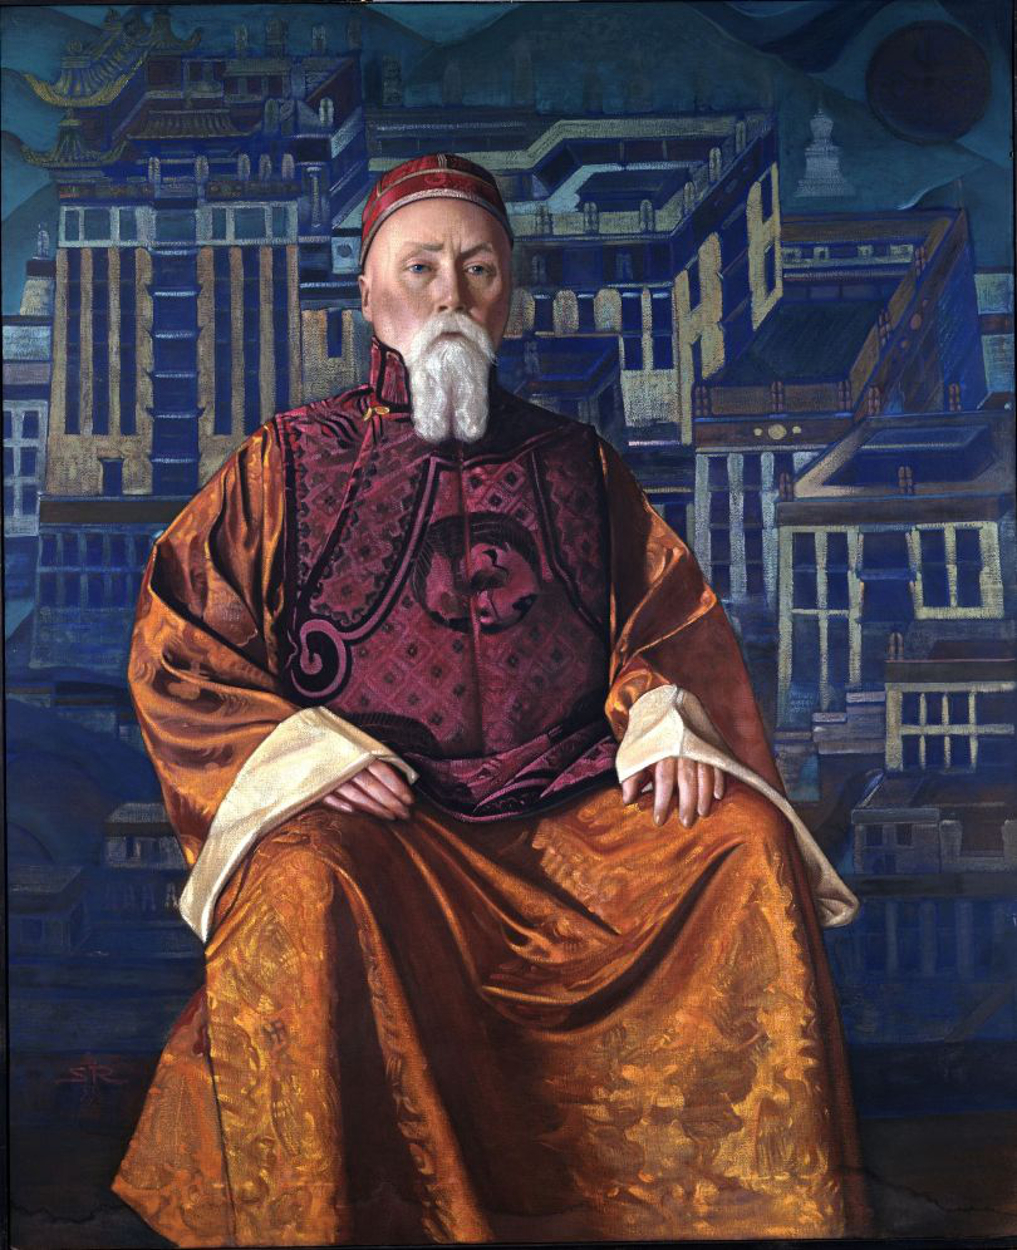 Nicholas Roerich - octobre 9, 1874 - décembre 13, 1947